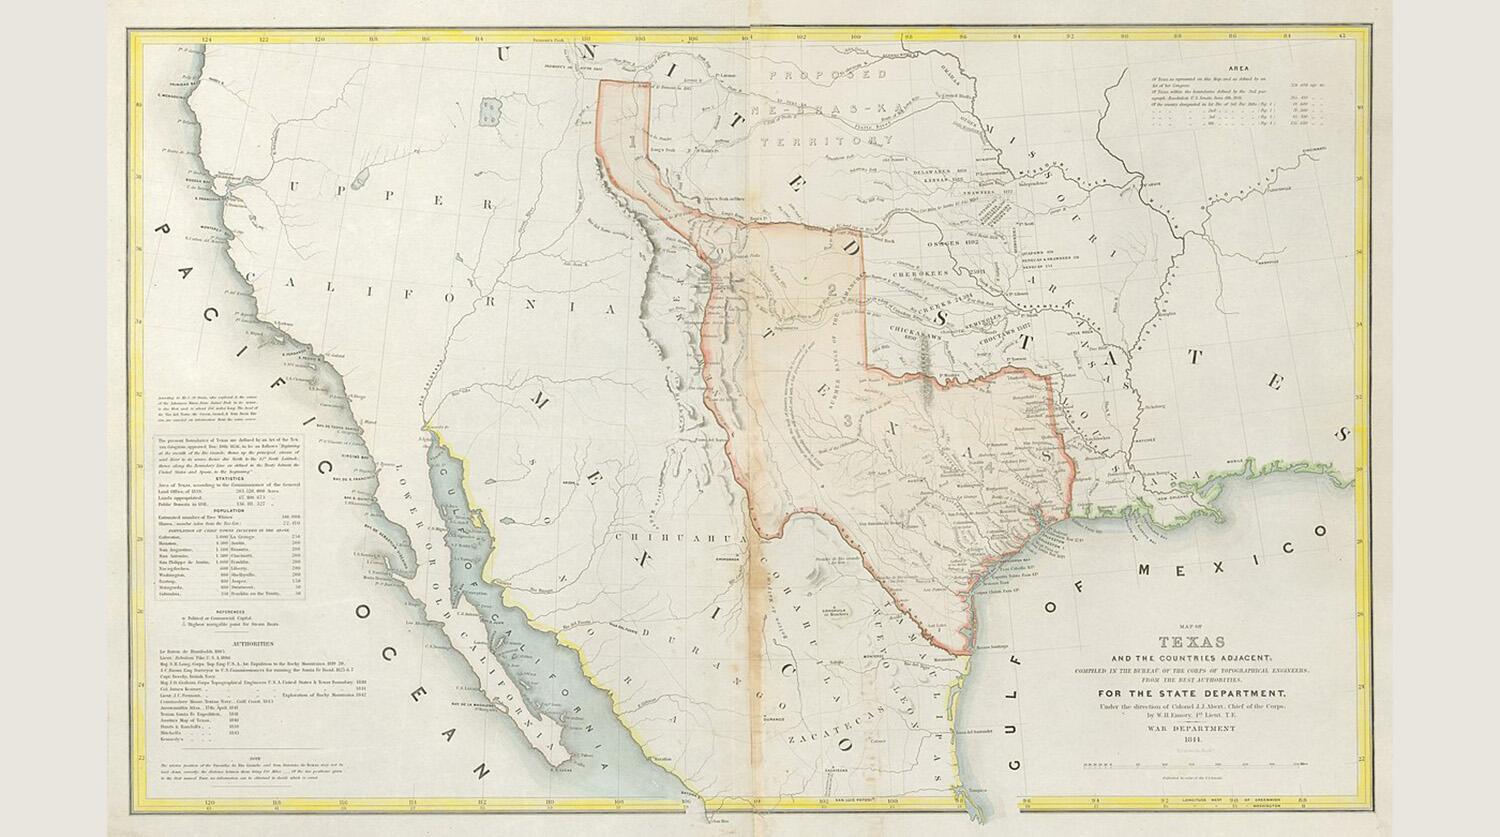 1200px-emory-map-of-texas-1844-uta.jpg